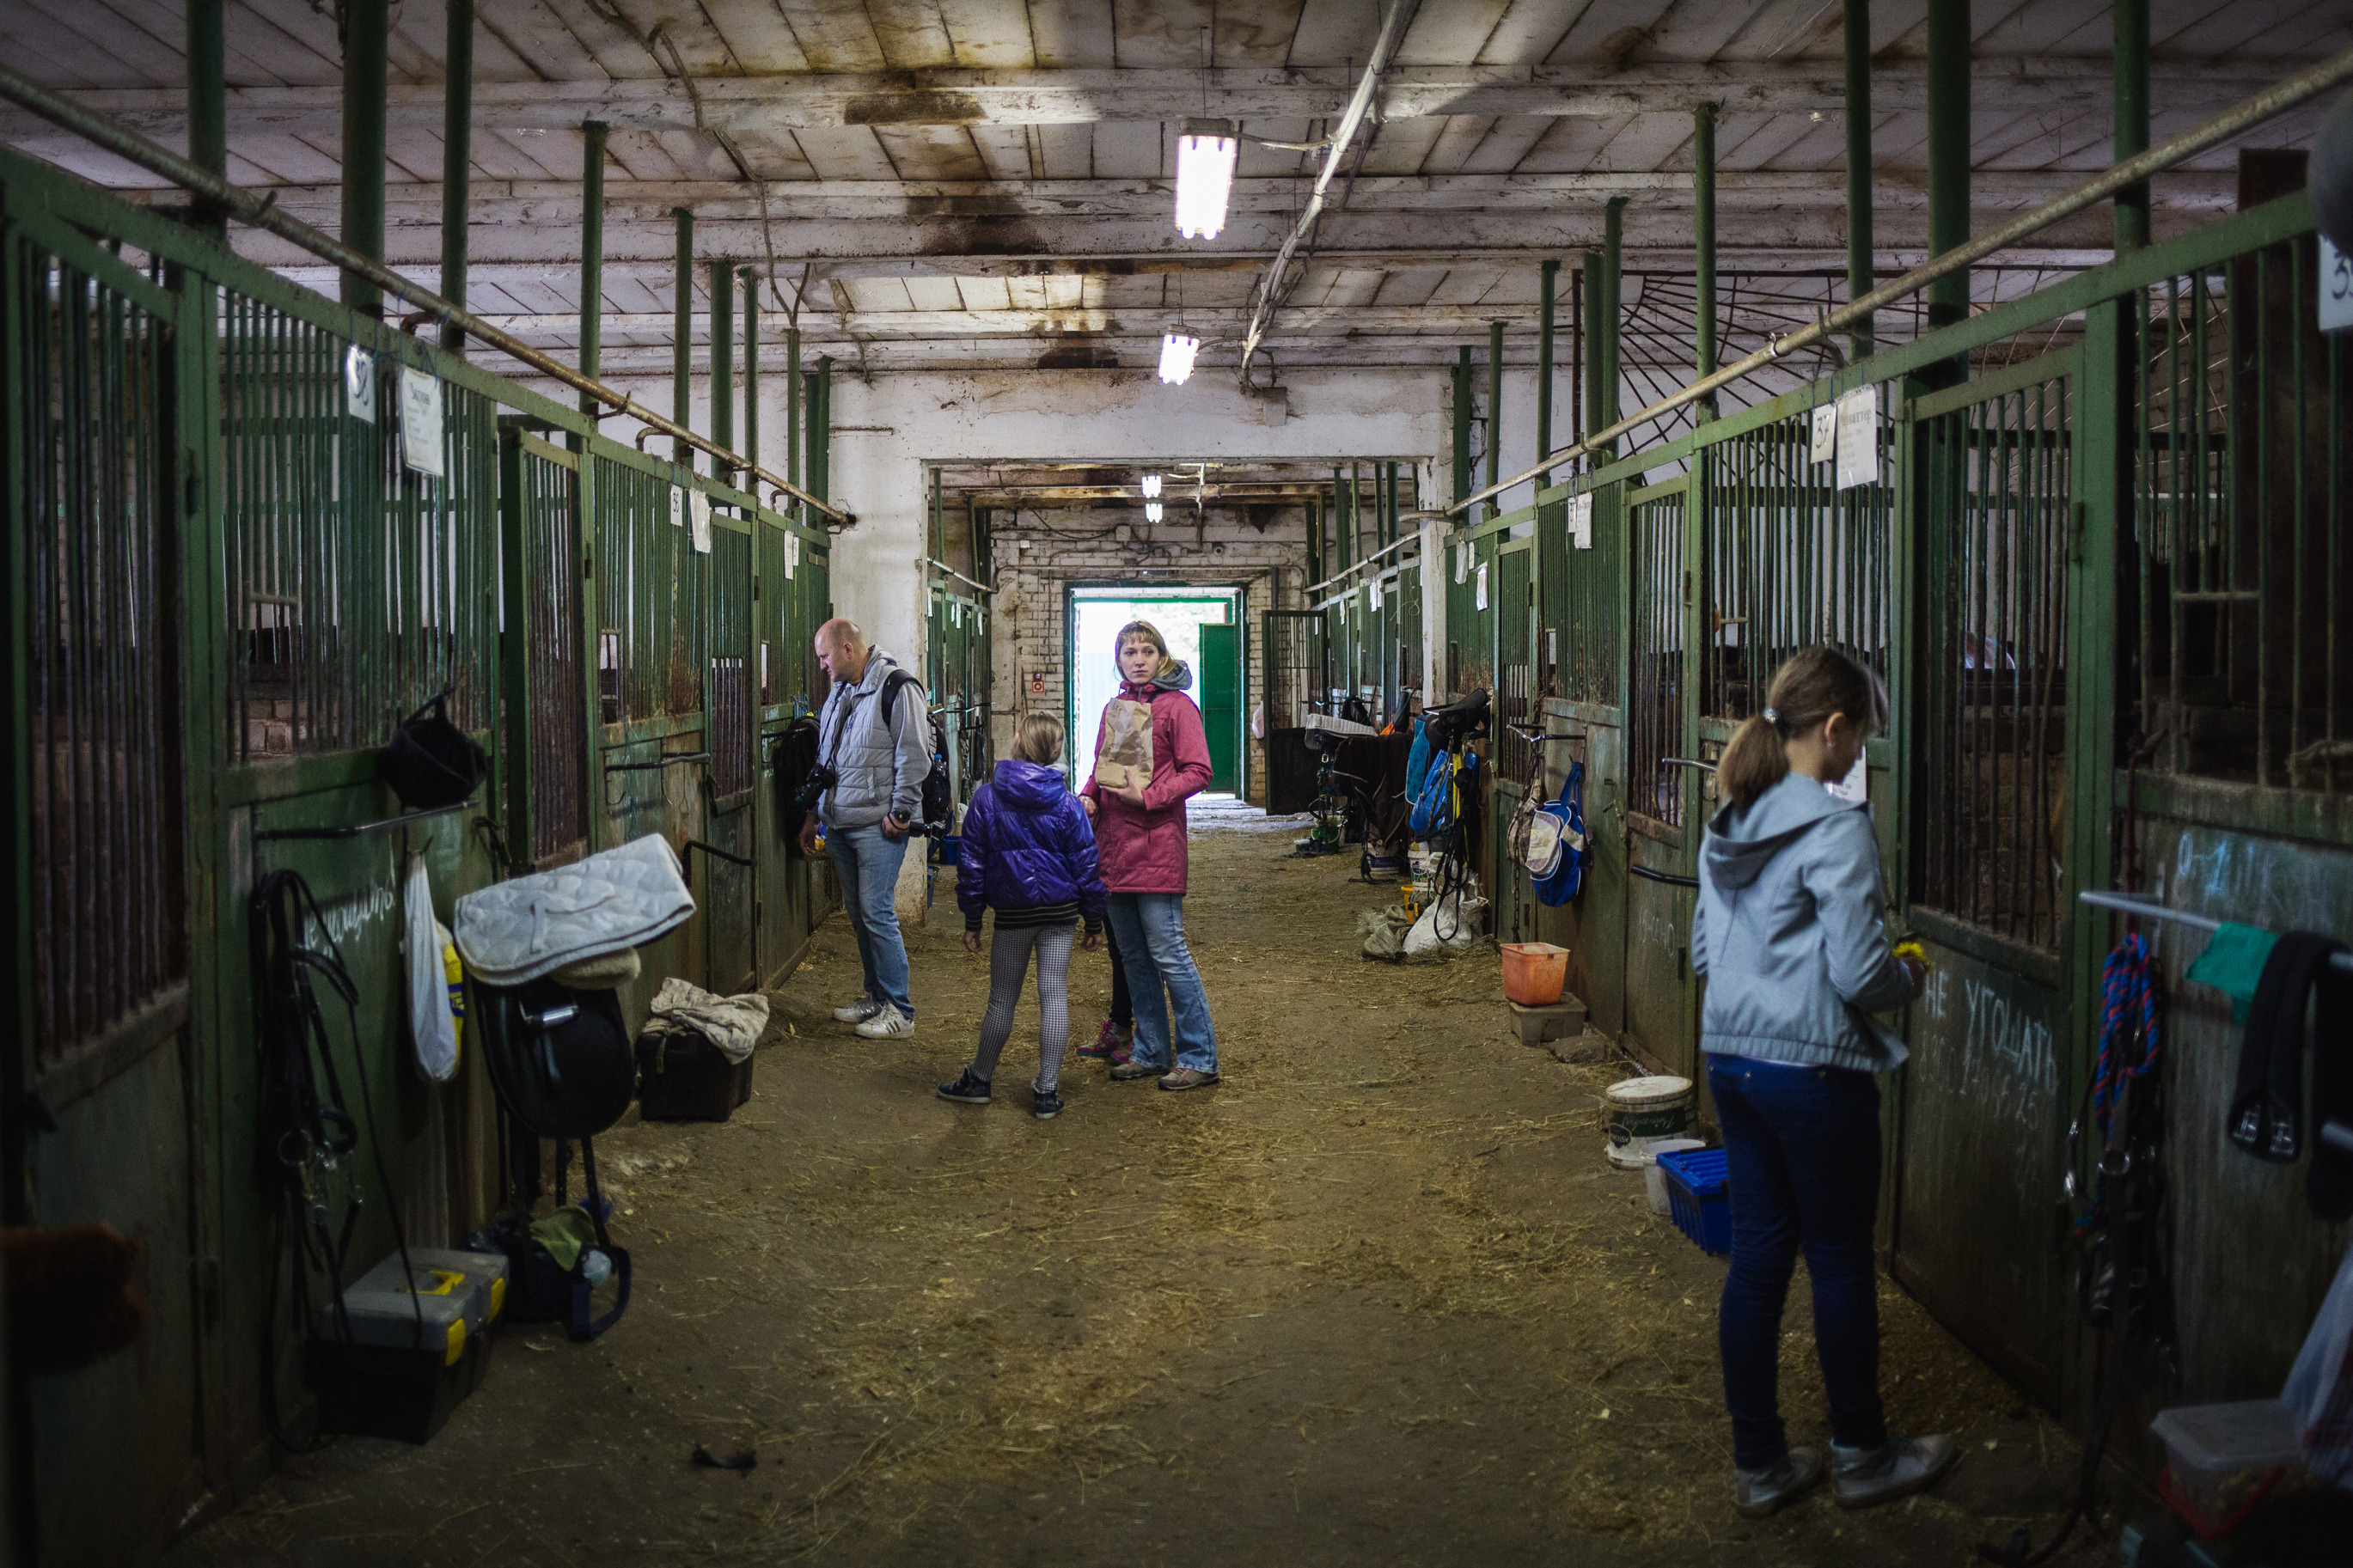 Дети против: воспитанники конной школы защищают ее собственность в суде